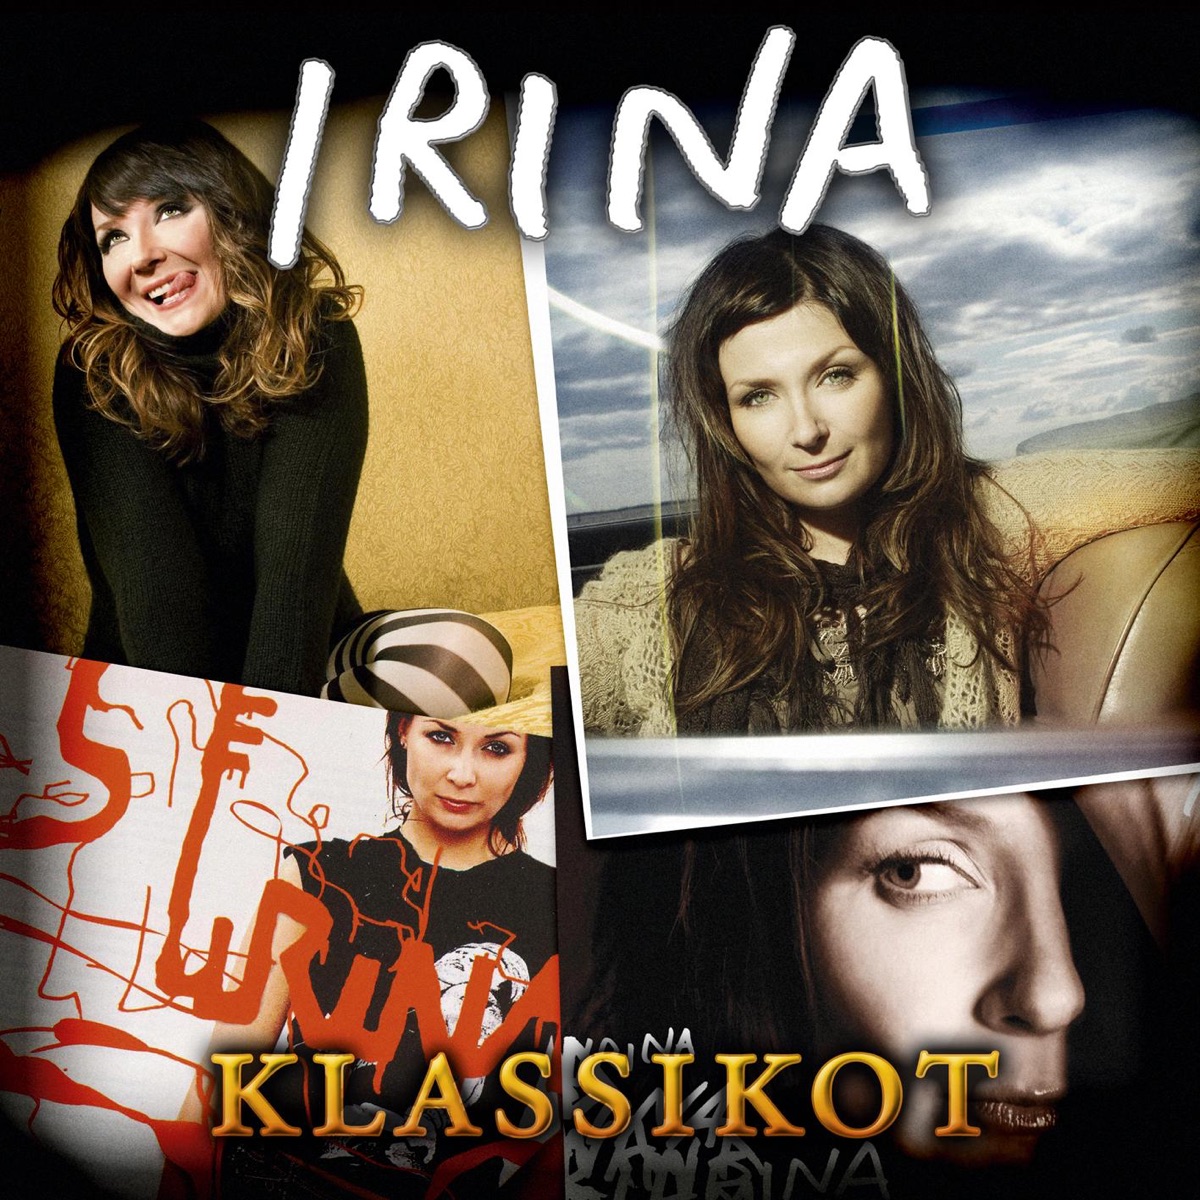 Aattoaamu (Anna laulu lahjaksi) - Single - Album by Irina - Apple Music